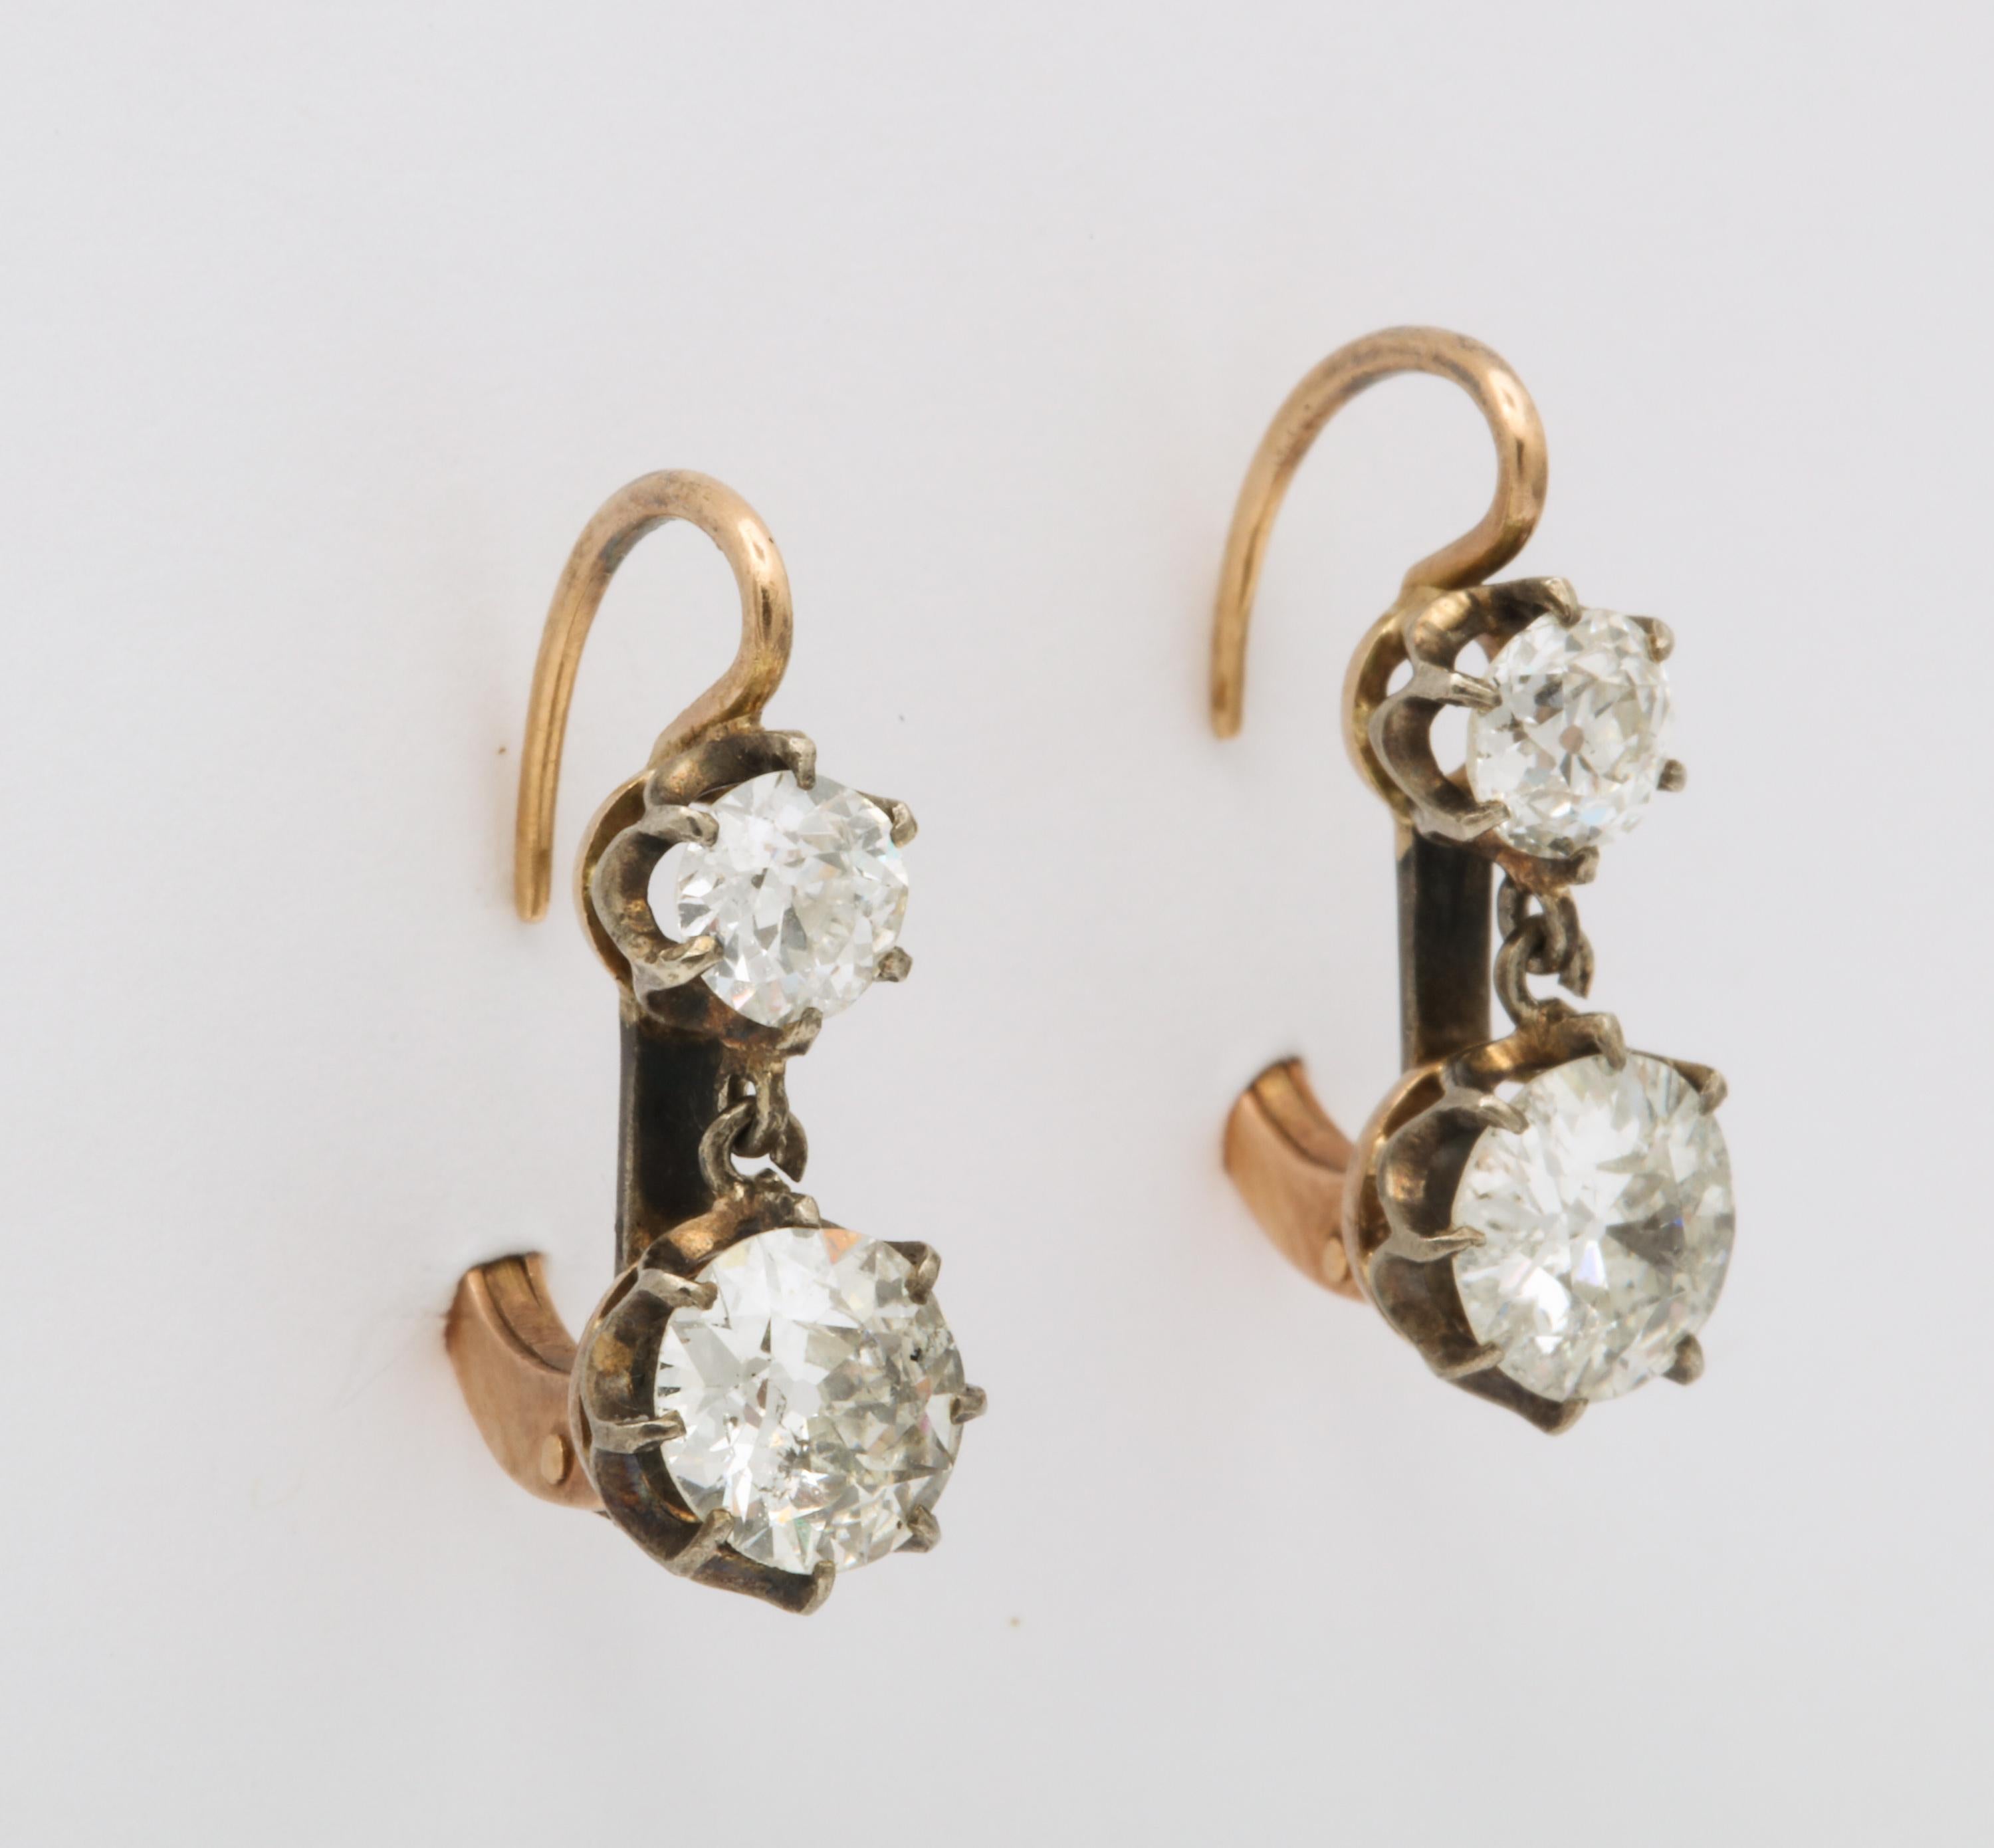 1910 earrings